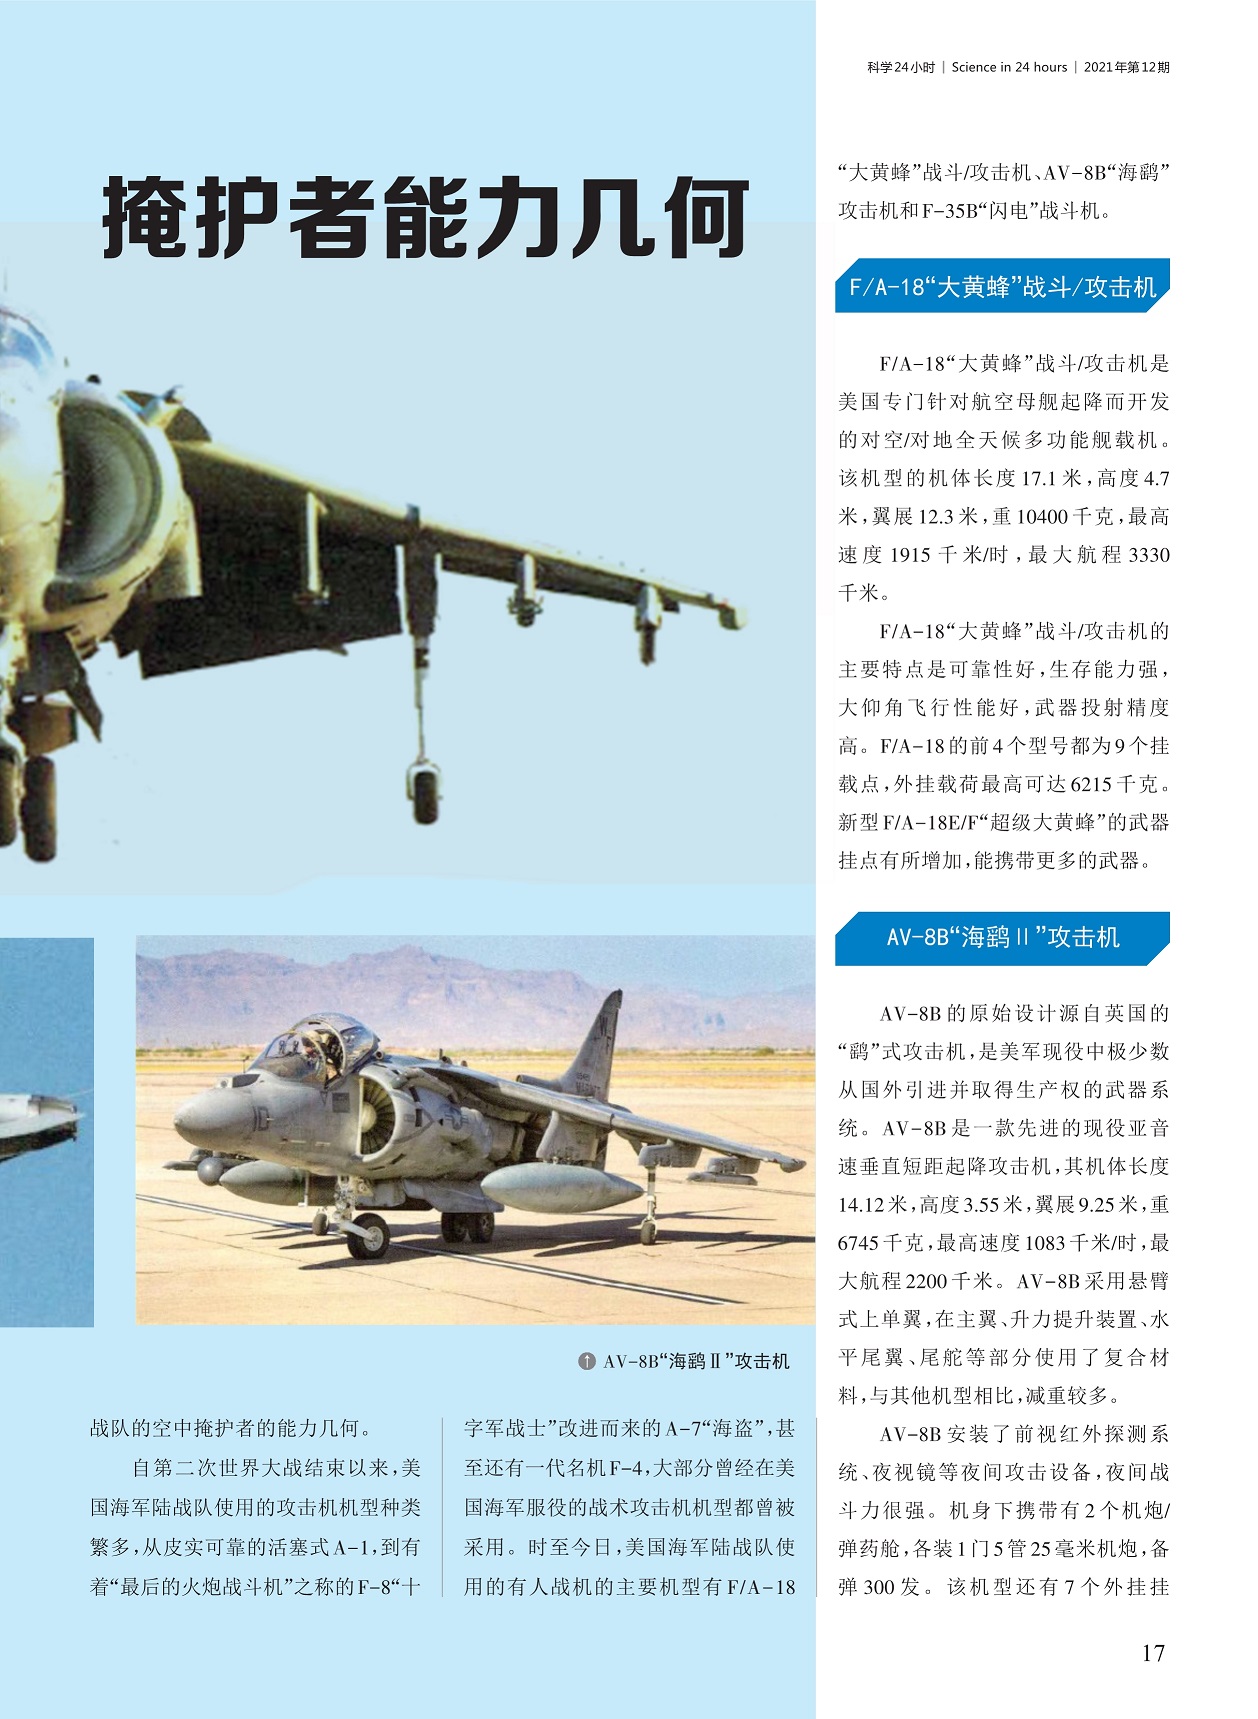 海军陆战队使用的攻击机机型种类多,AV-8B 的原始设计